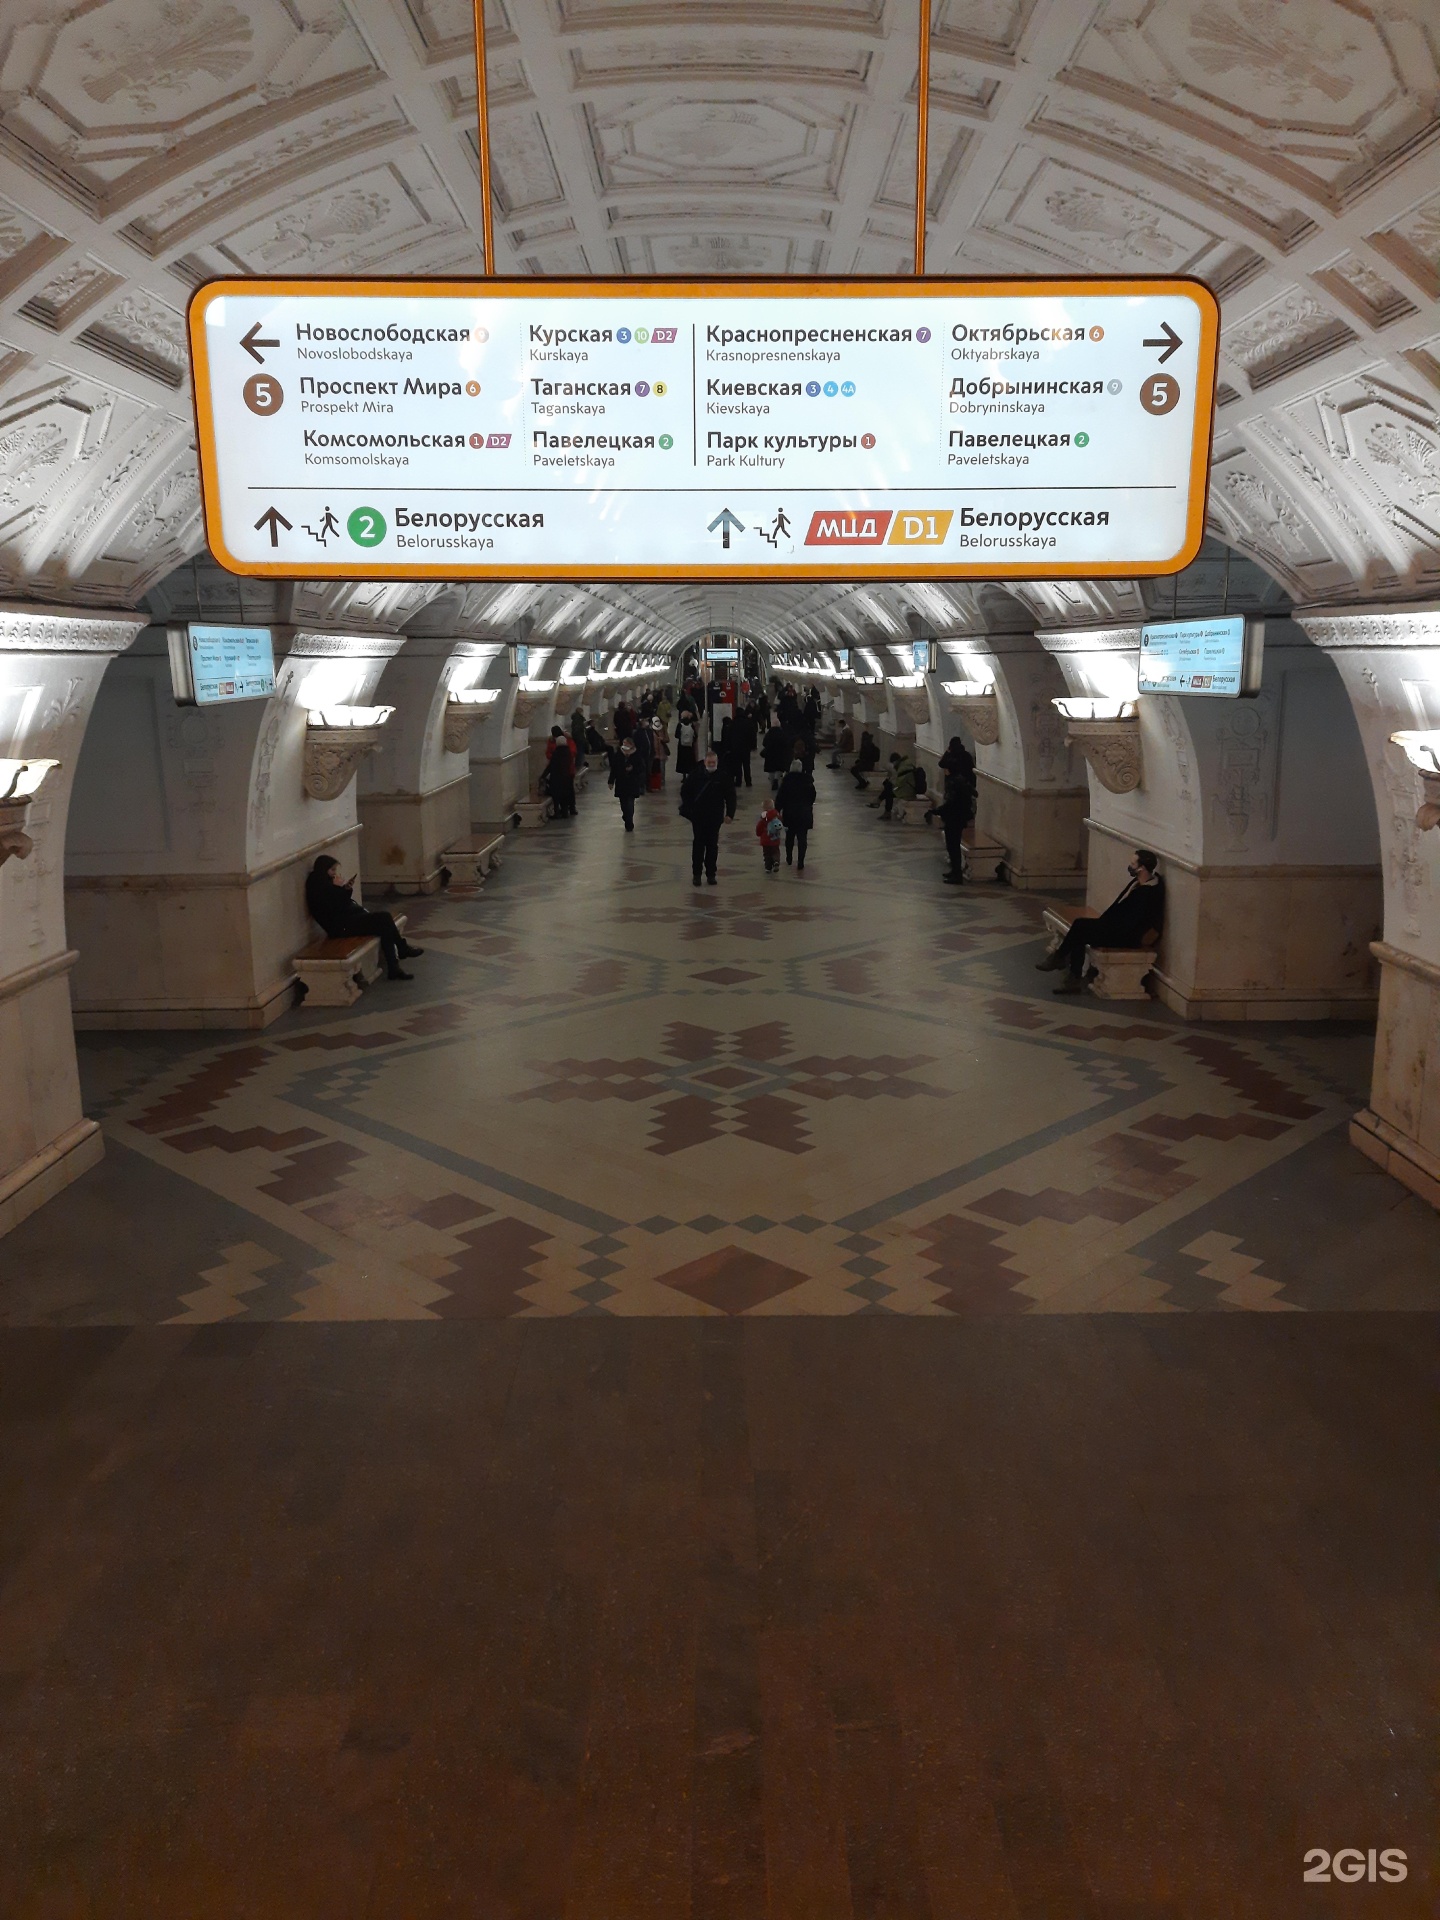 метро белорусская радиальная